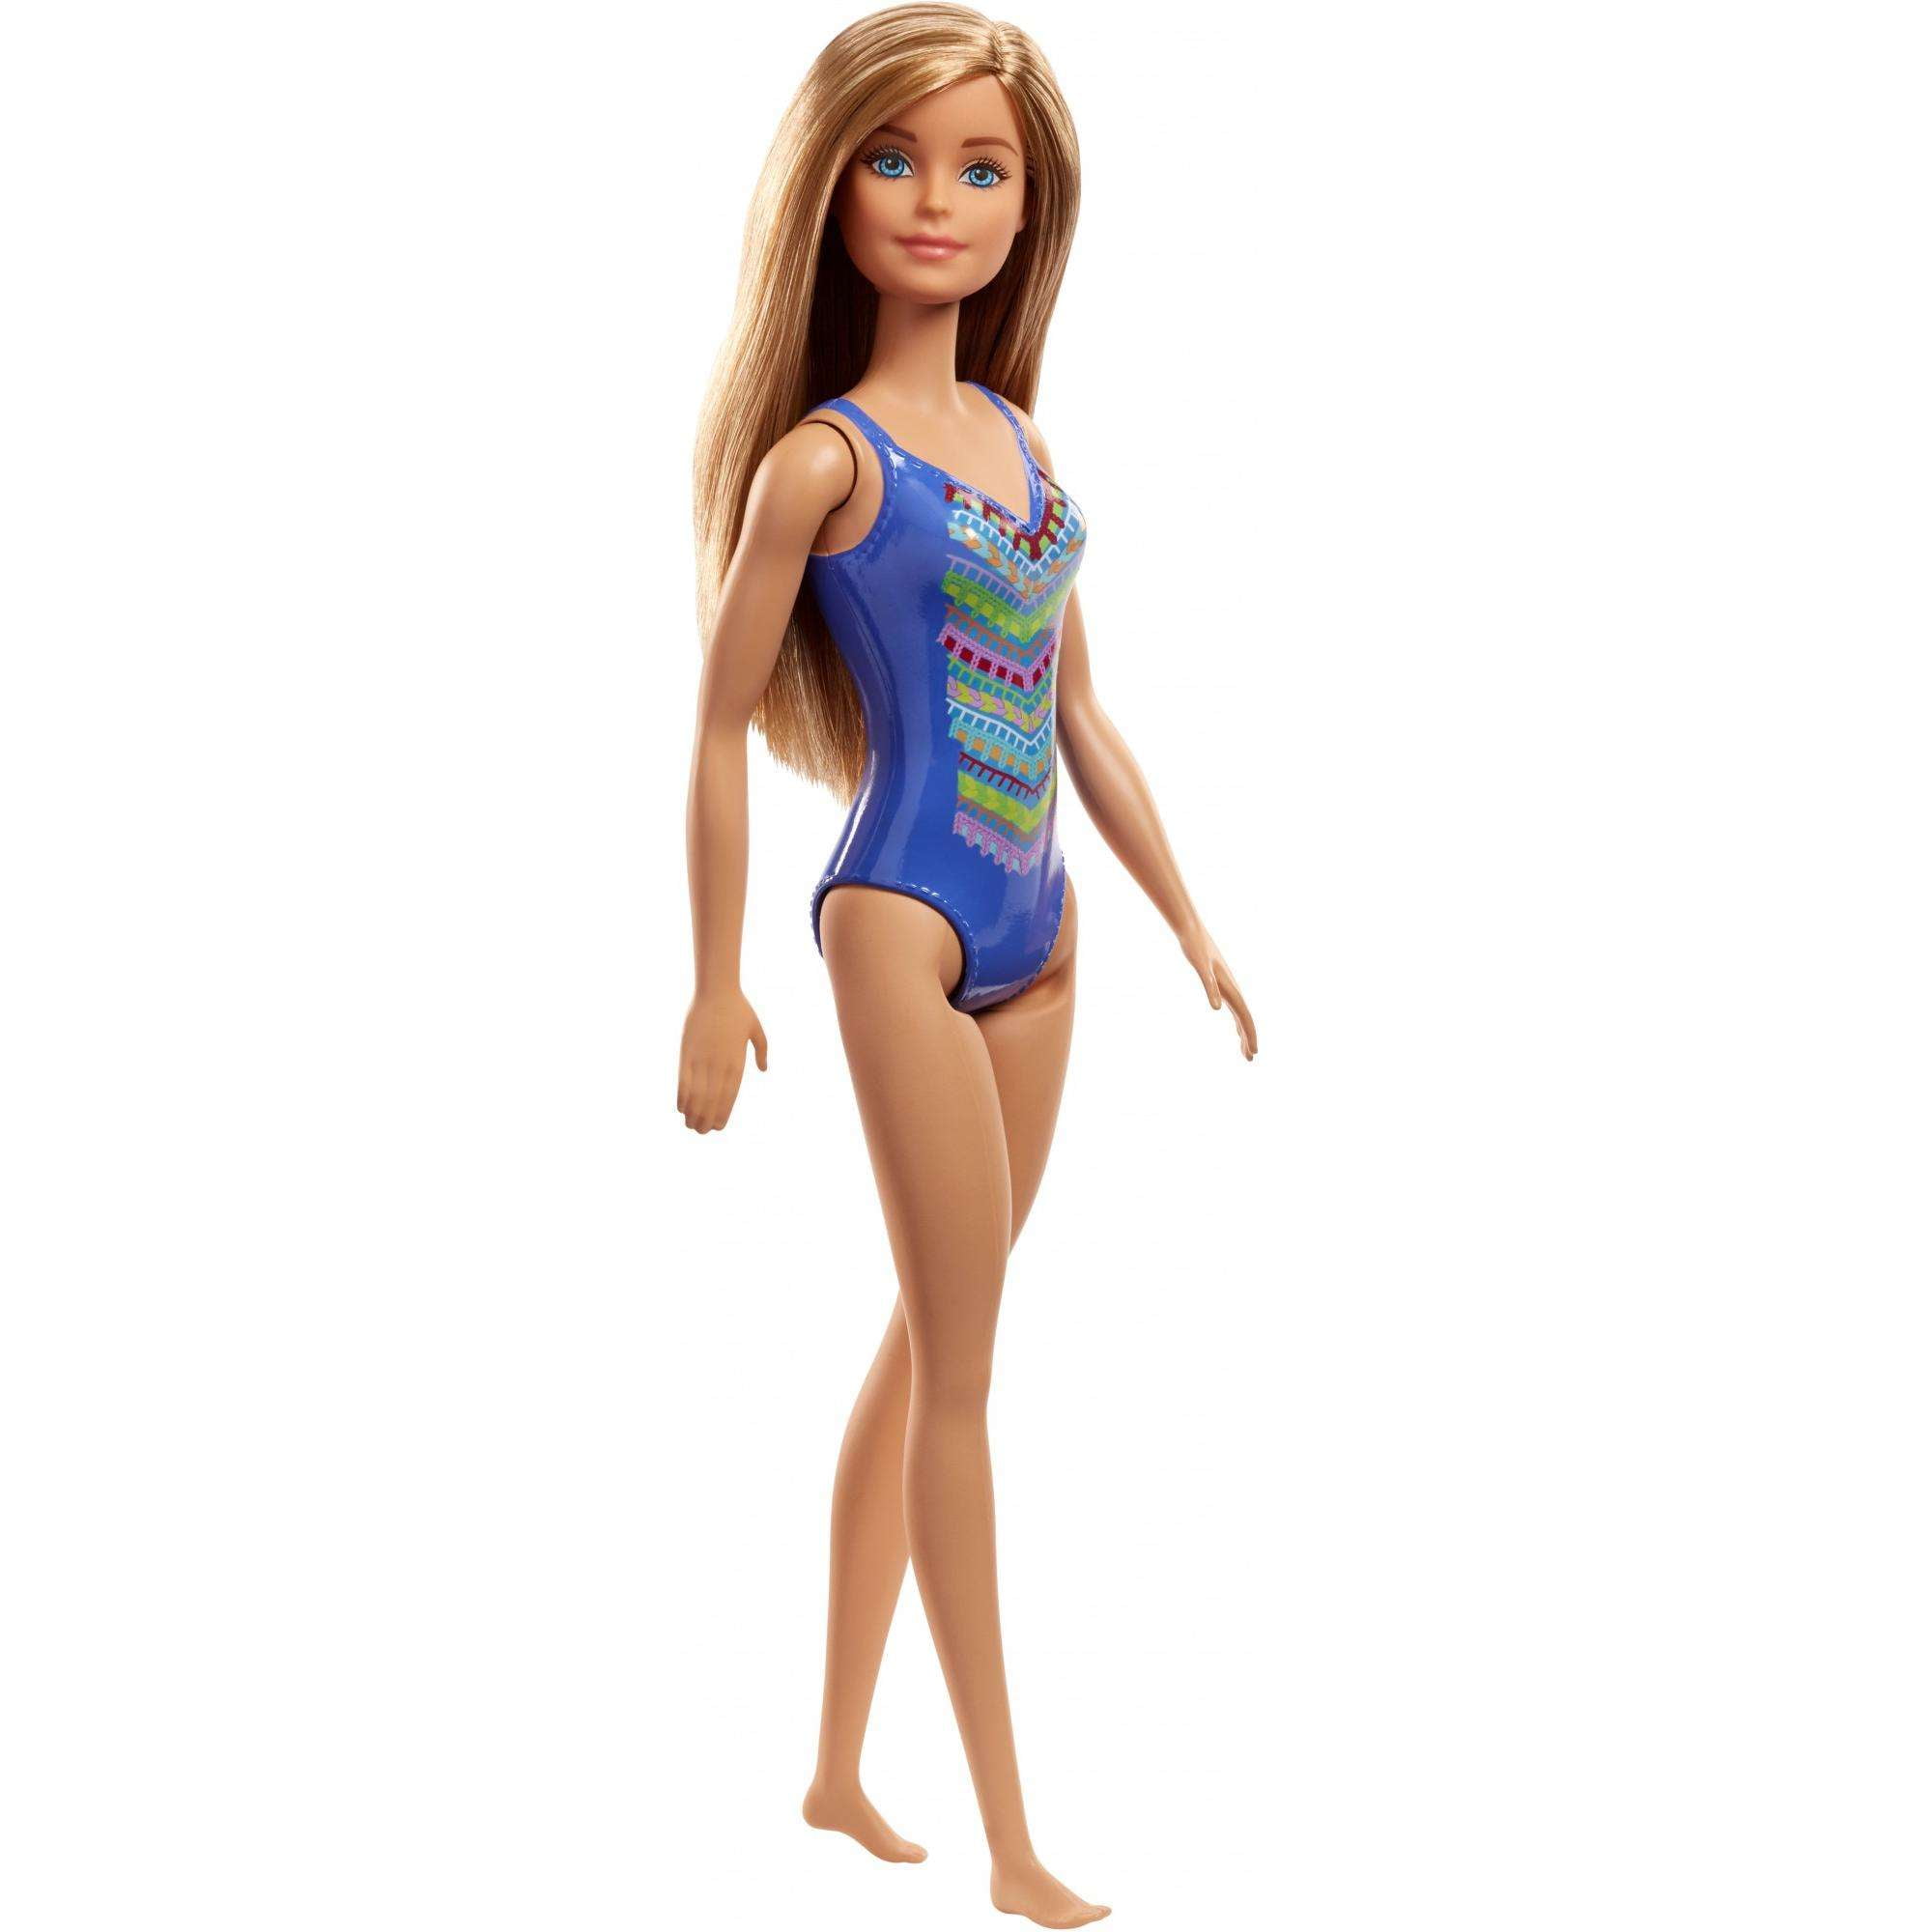 PETITE Barbie METALLIC BLUE One Piece Swim Suit 